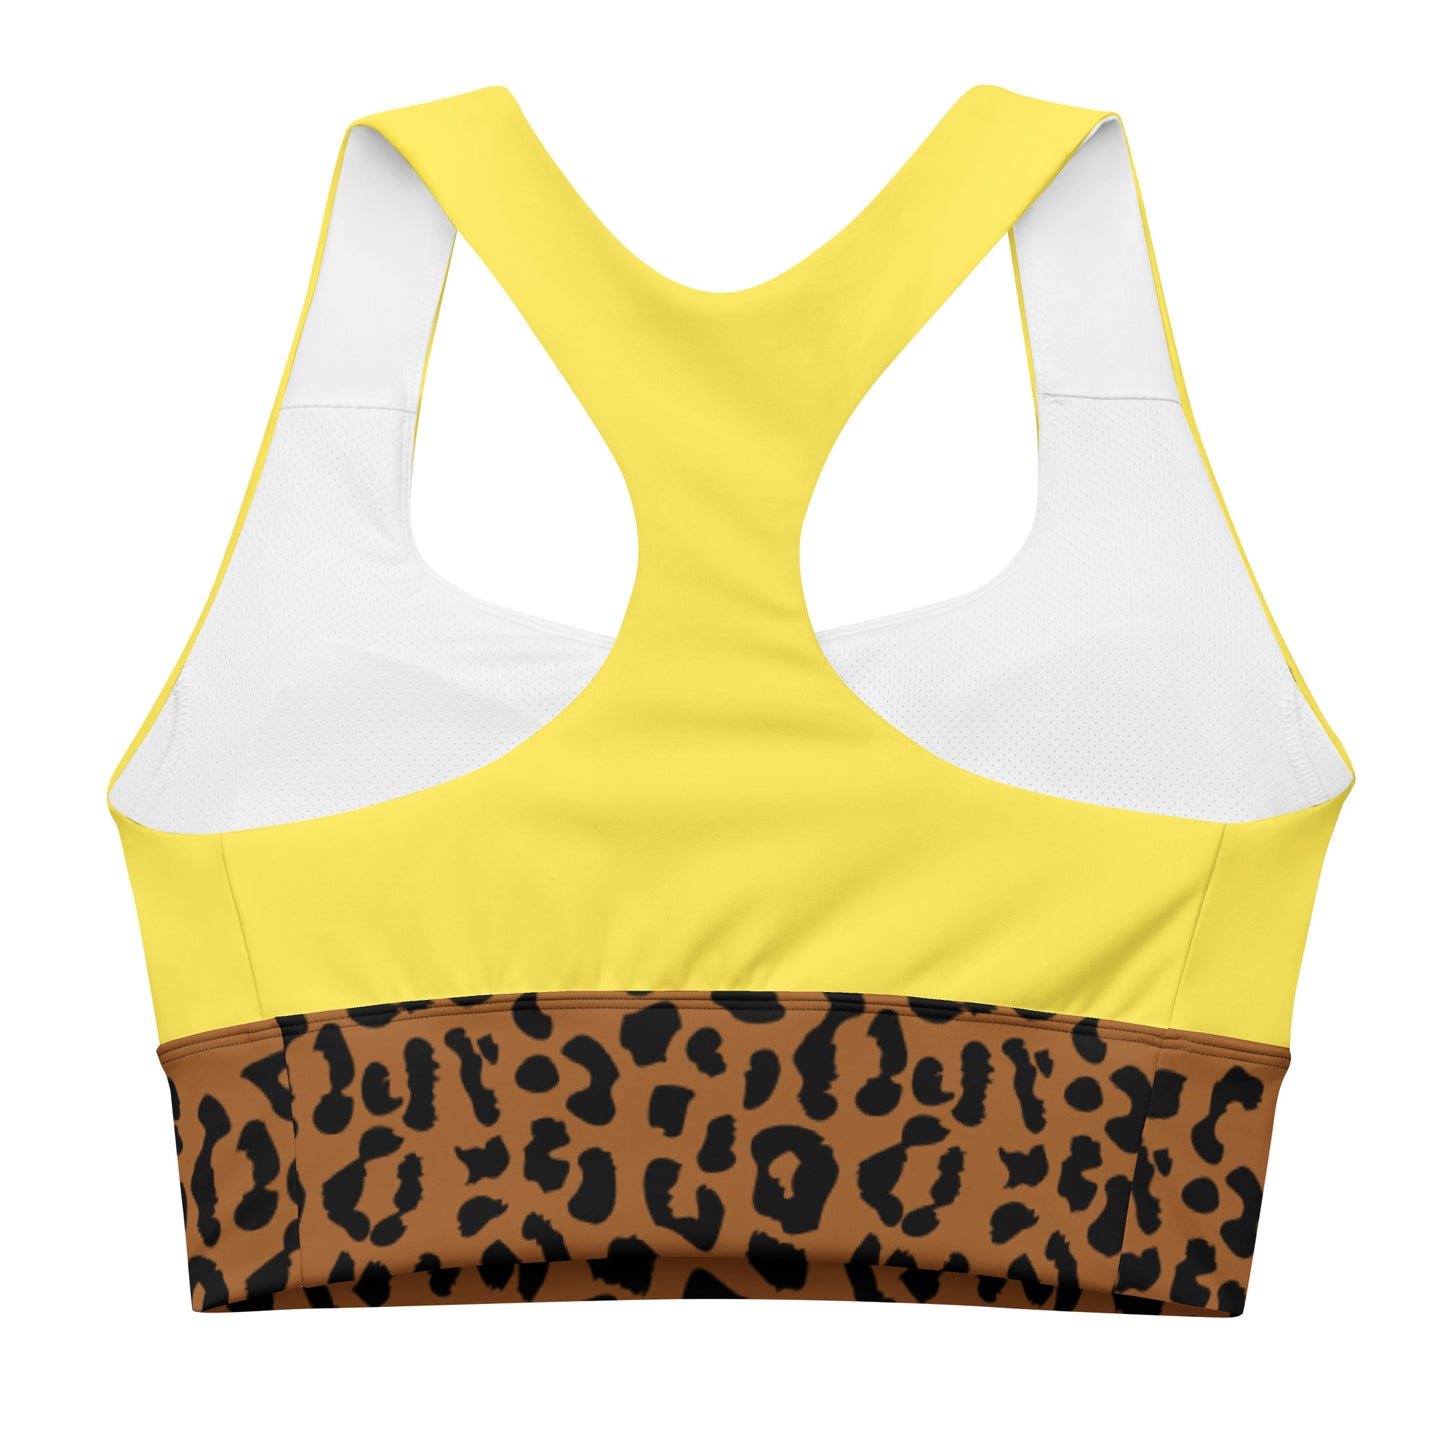 Brooklyn sports bra Yellow Leopard